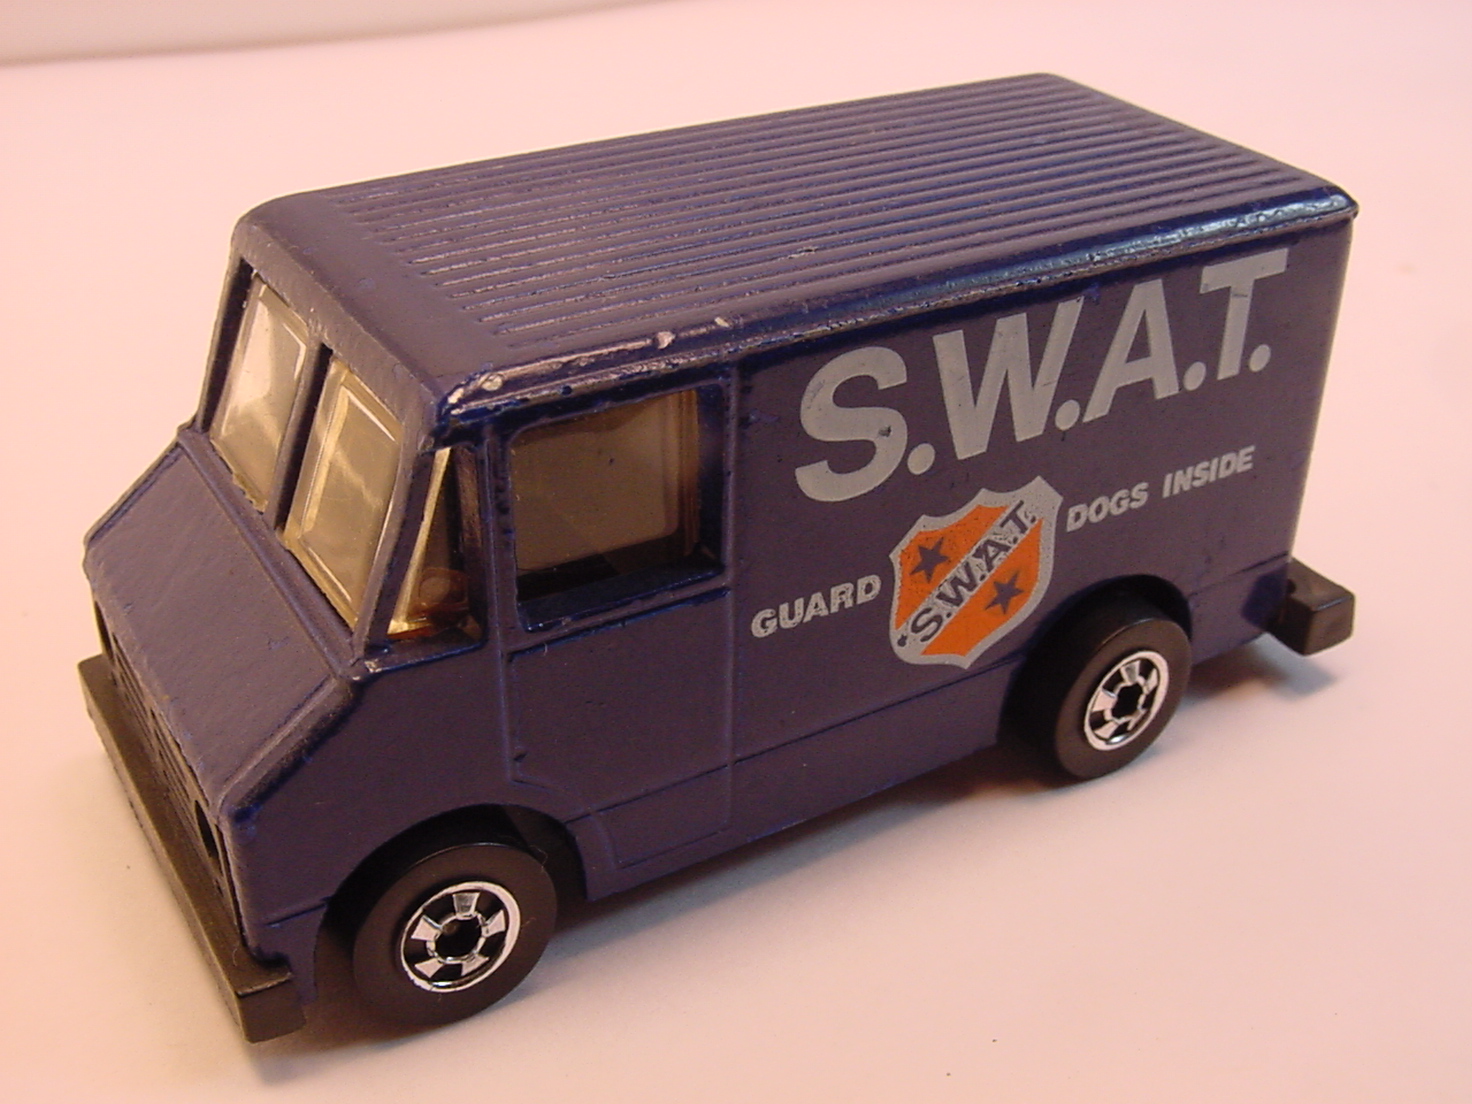 S.W.A.T. Van | Hot Wheels Wiki | Fandom